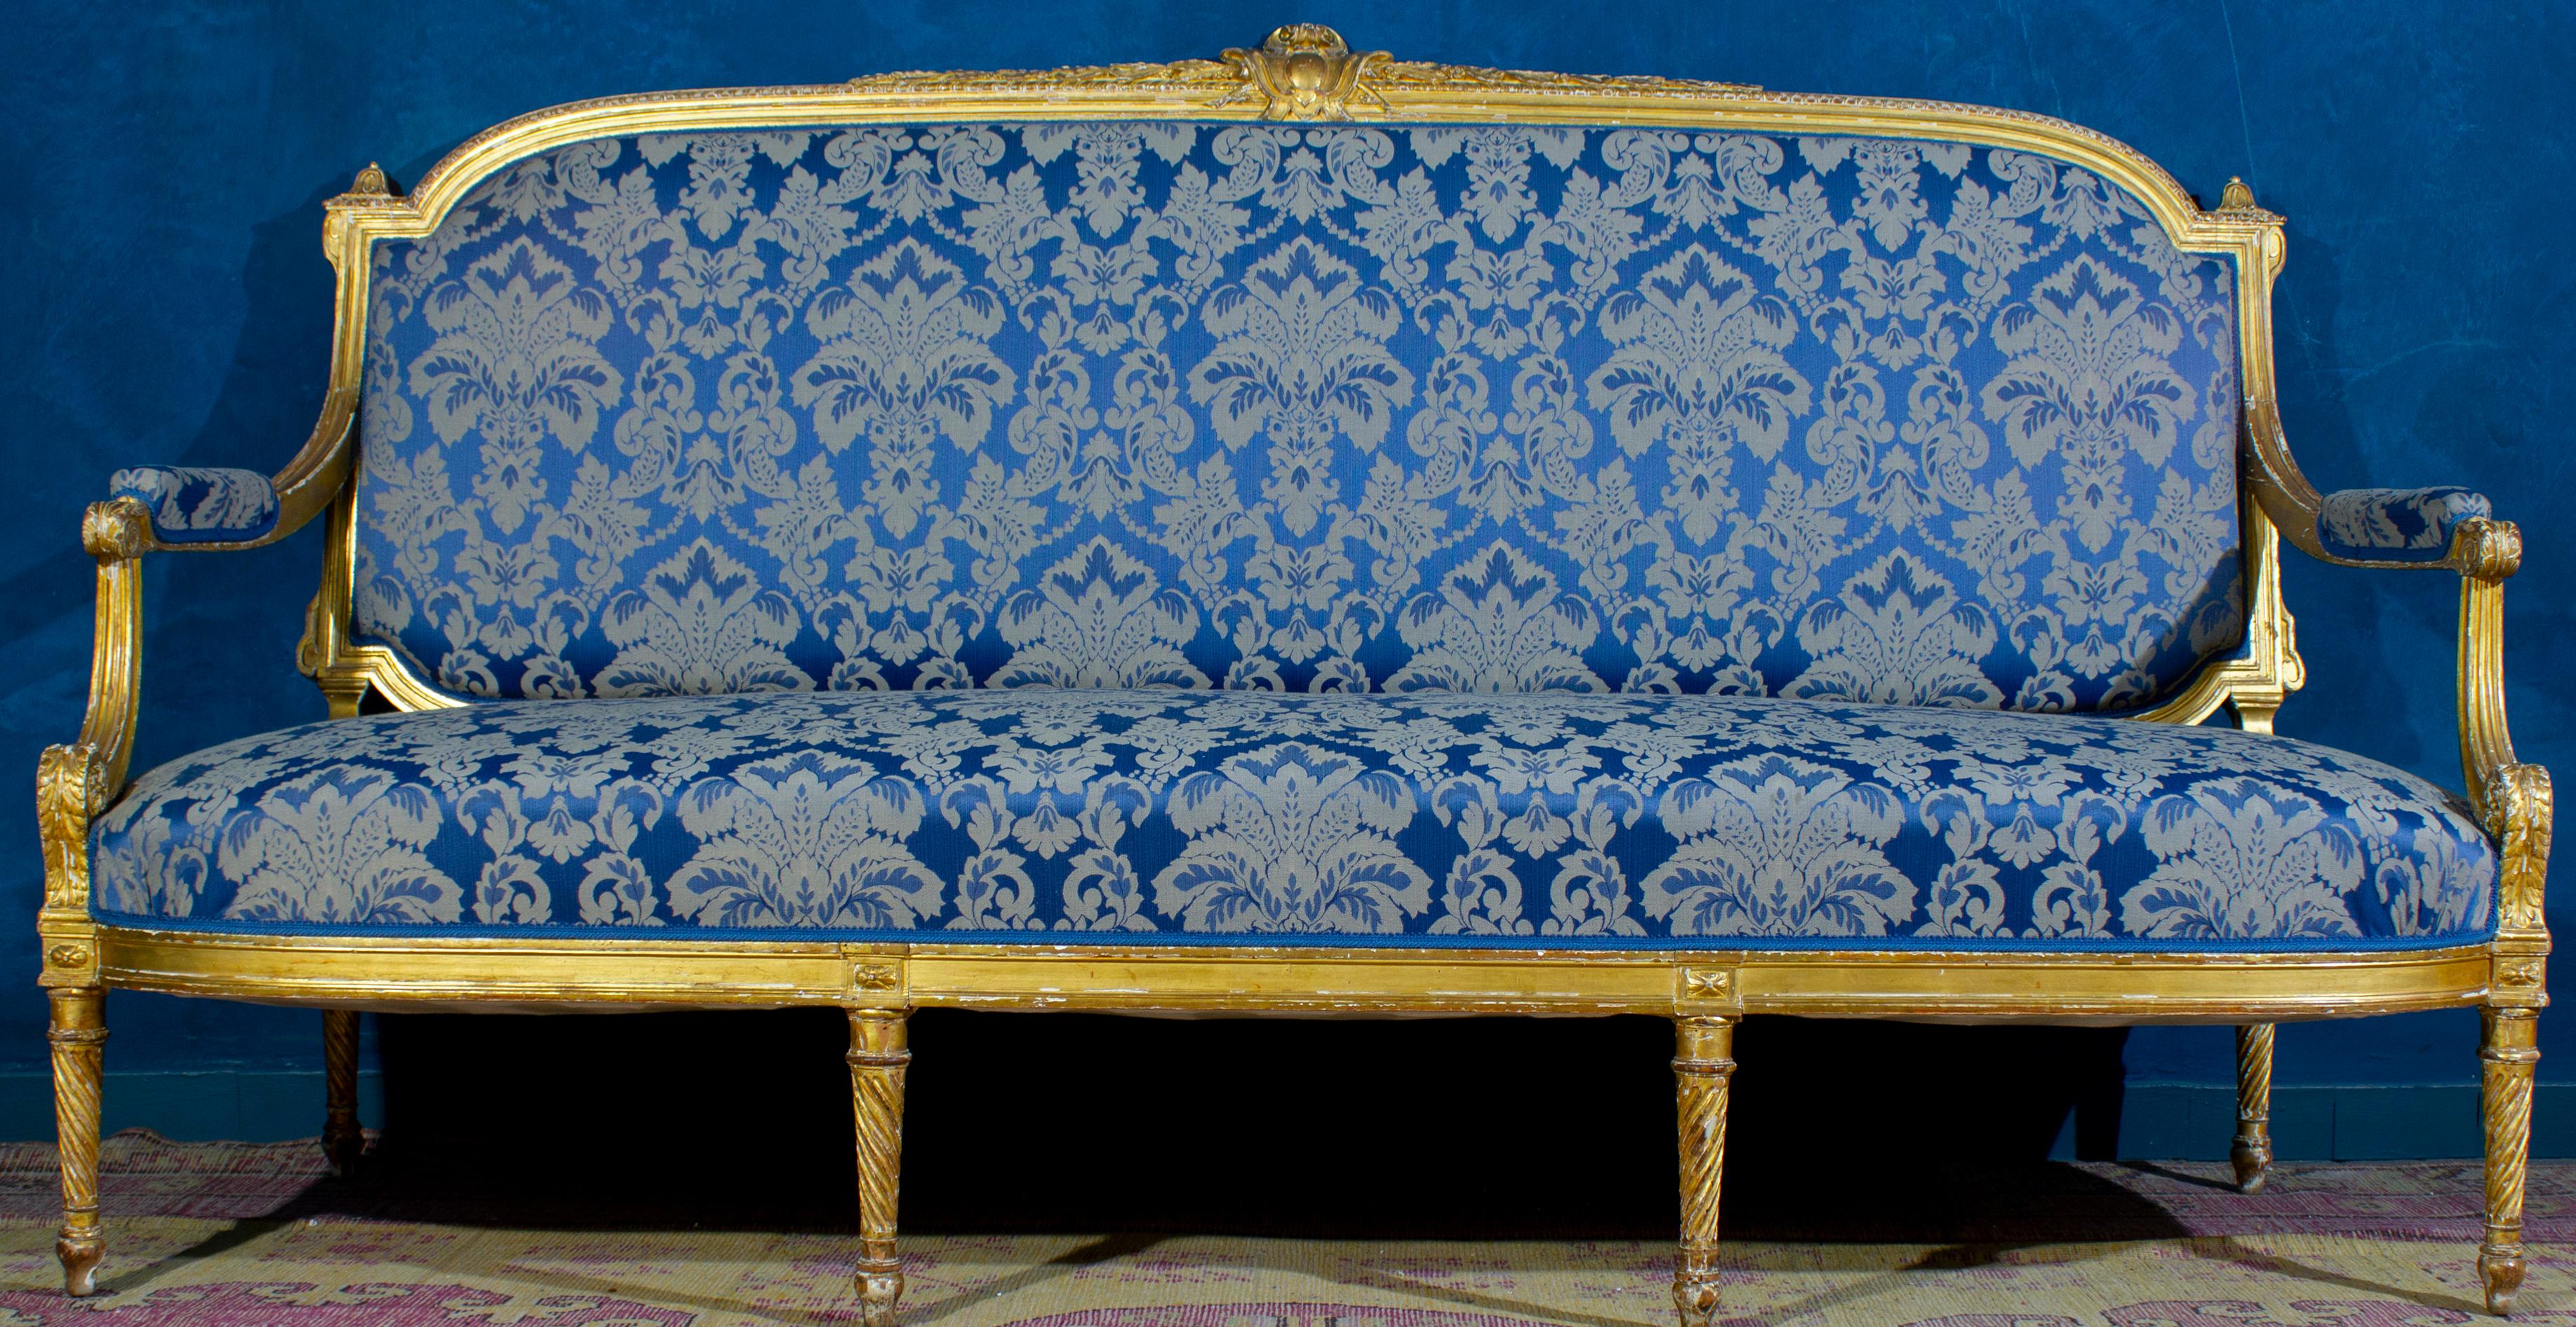 Diese außergewöhnliche, fein geschnitzte und vergoldete 6-teilige Holzgarnitur besteht aus einem Sofa, vier Sesseln und zwei Einzelsesseln mit Originalvergoldung.
Die Polsterung ist in sehr gutem Zustand. Der Satz muss wiederhergestellt werden. Der